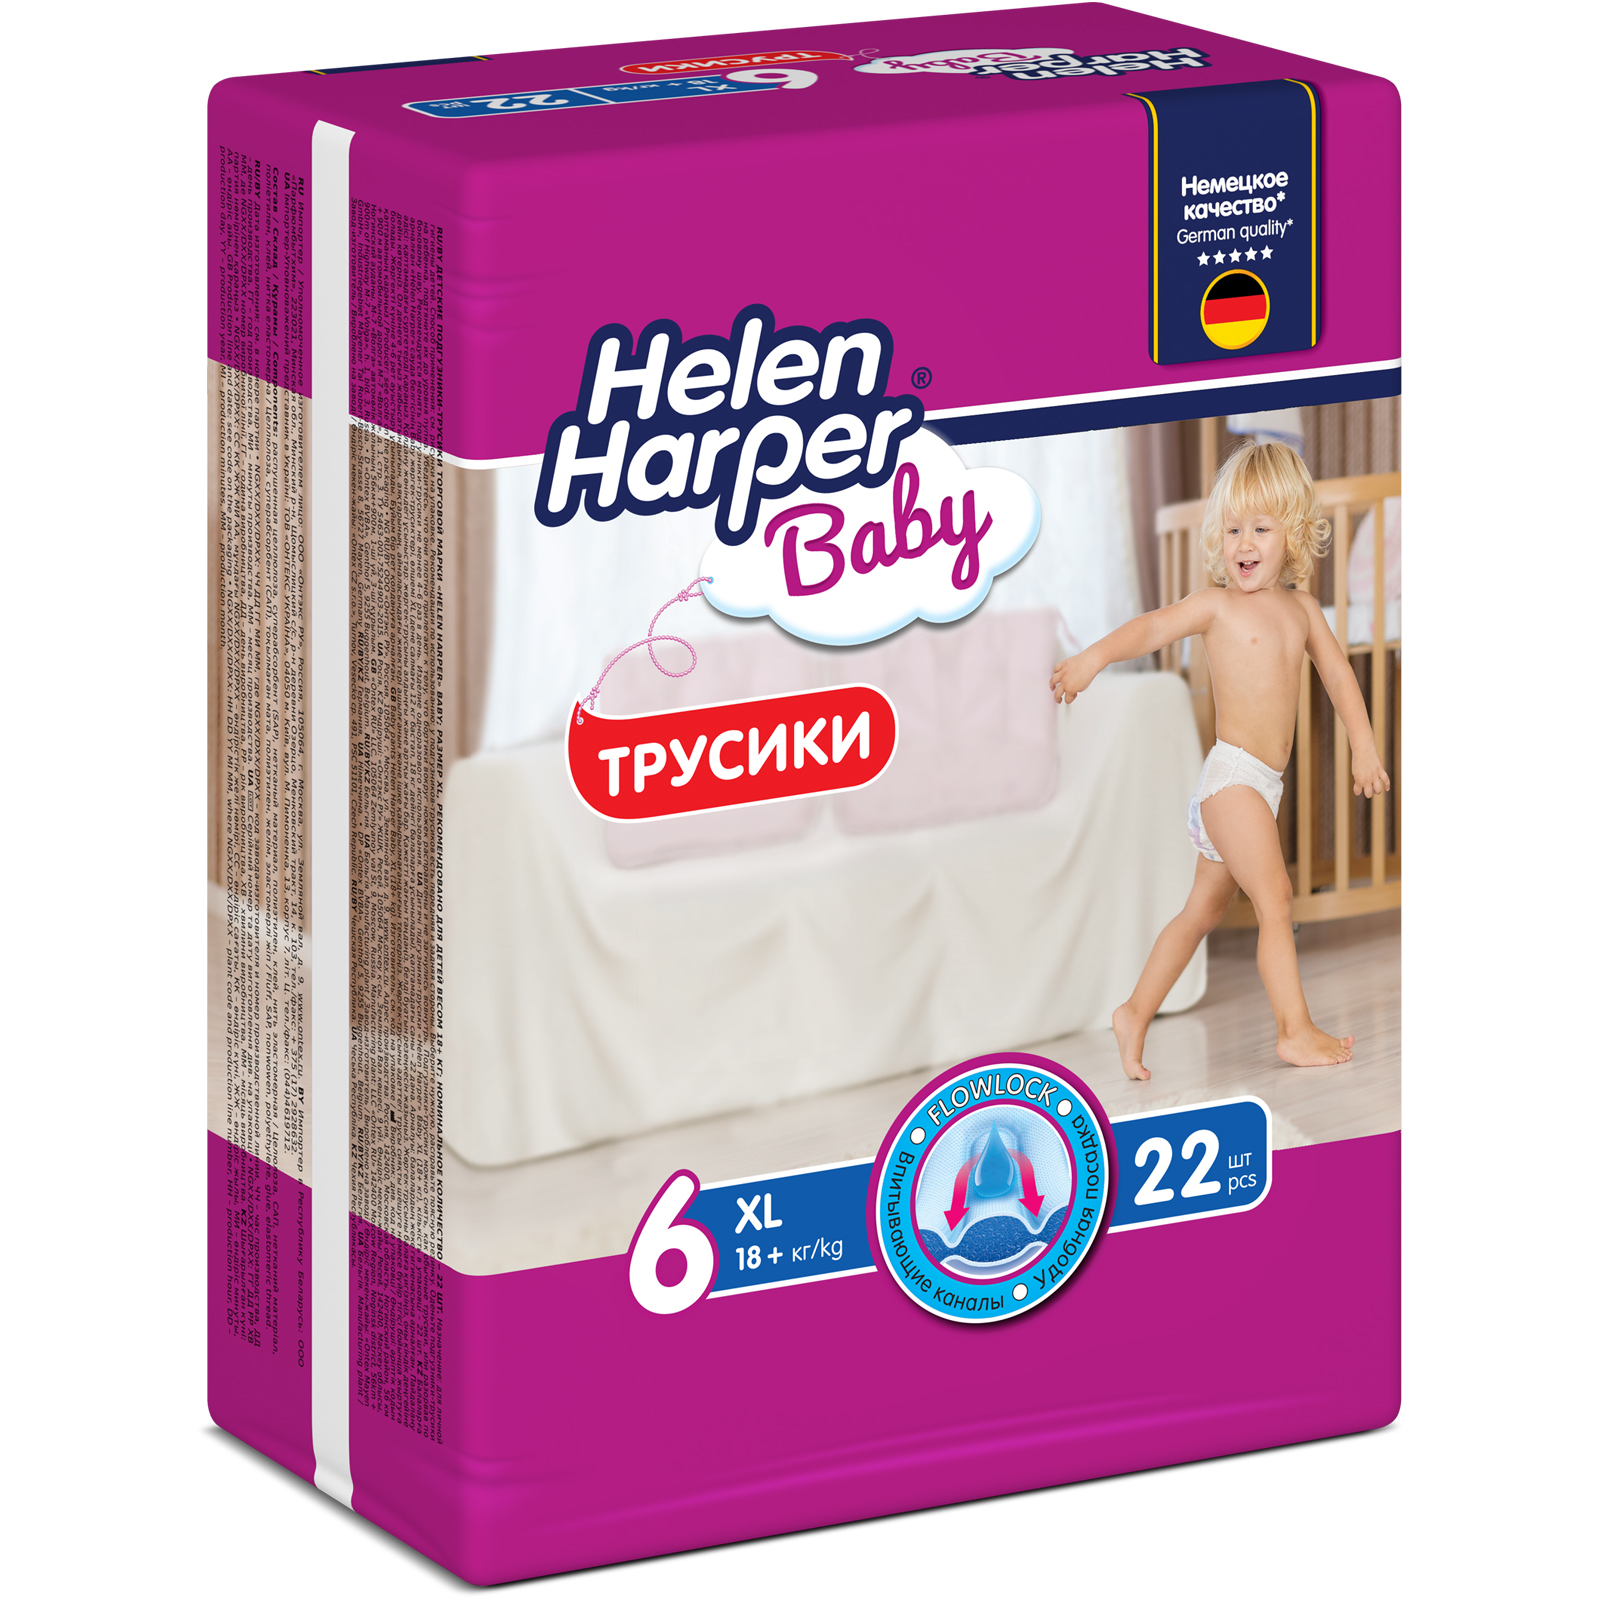 Трусики-подгузники детские Helen Harper Baby размер 6/XL 18+ кг 22 шт. - фото 2